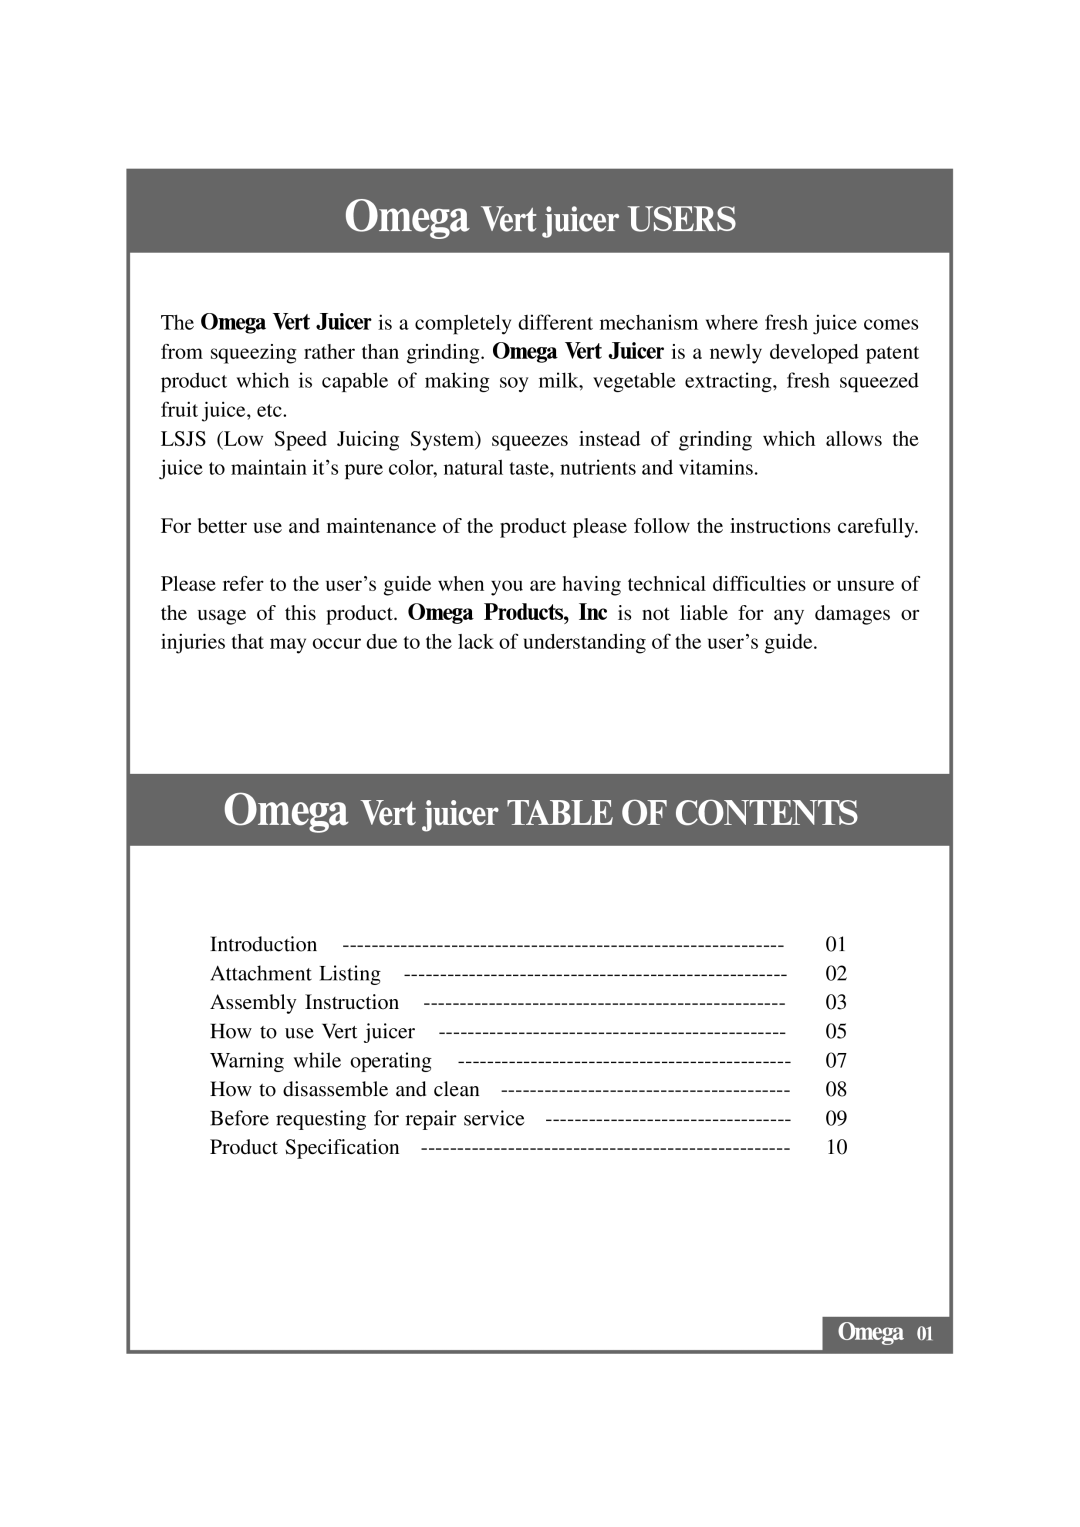 Omega VRT330 instruction manual Omega Vert juicer USERS, Omega Vert juicer TABLE OF CONTENTS 